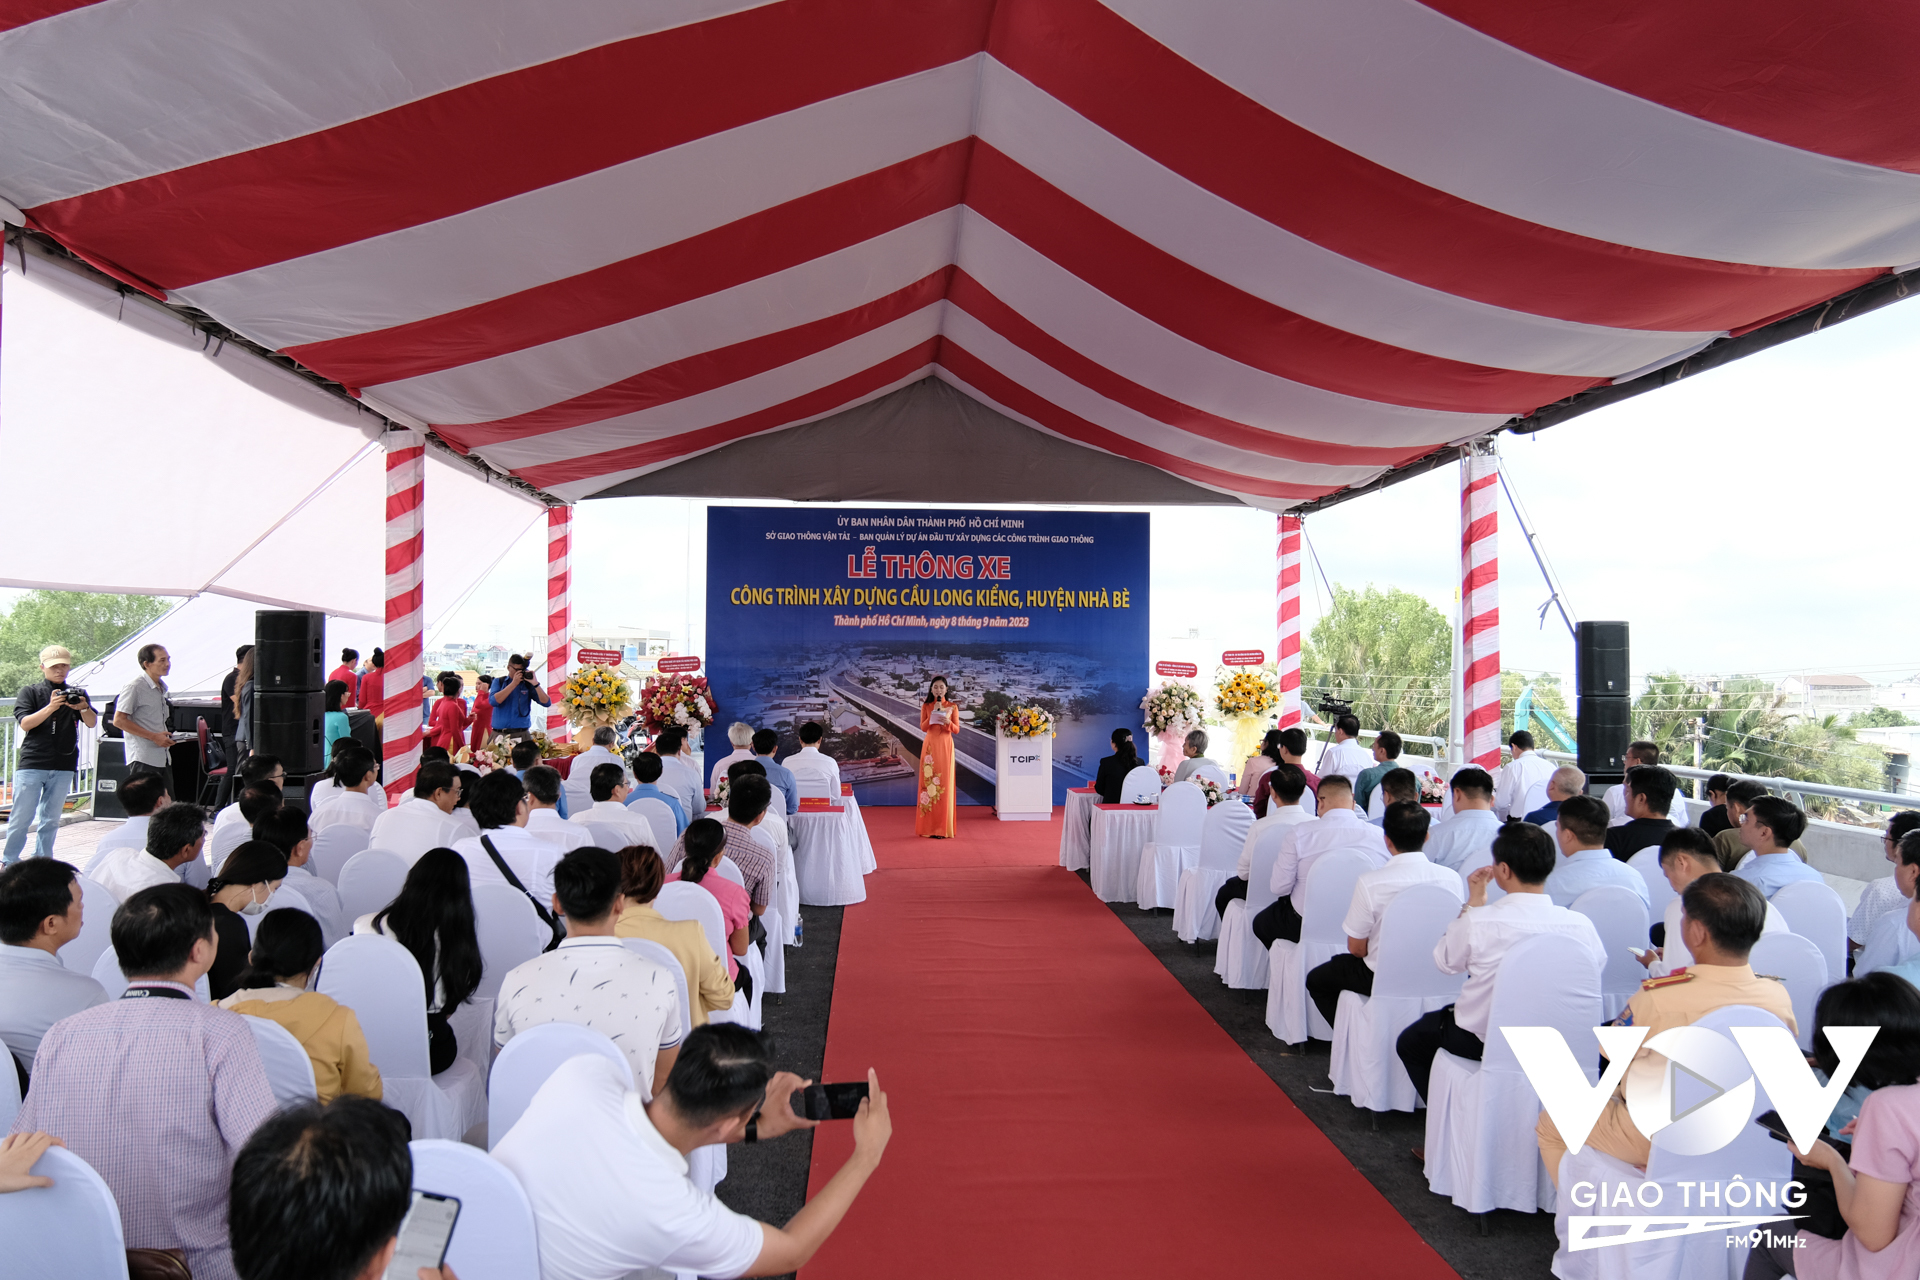 Sáng ngày 08/9, TP.HCM đã tổ chức lễ thông xe cầu Long Kiểng mới (huyện Nhà Bè, TP.HCM), sau gần 23 năm kể từ lúc phê duyệt dự án